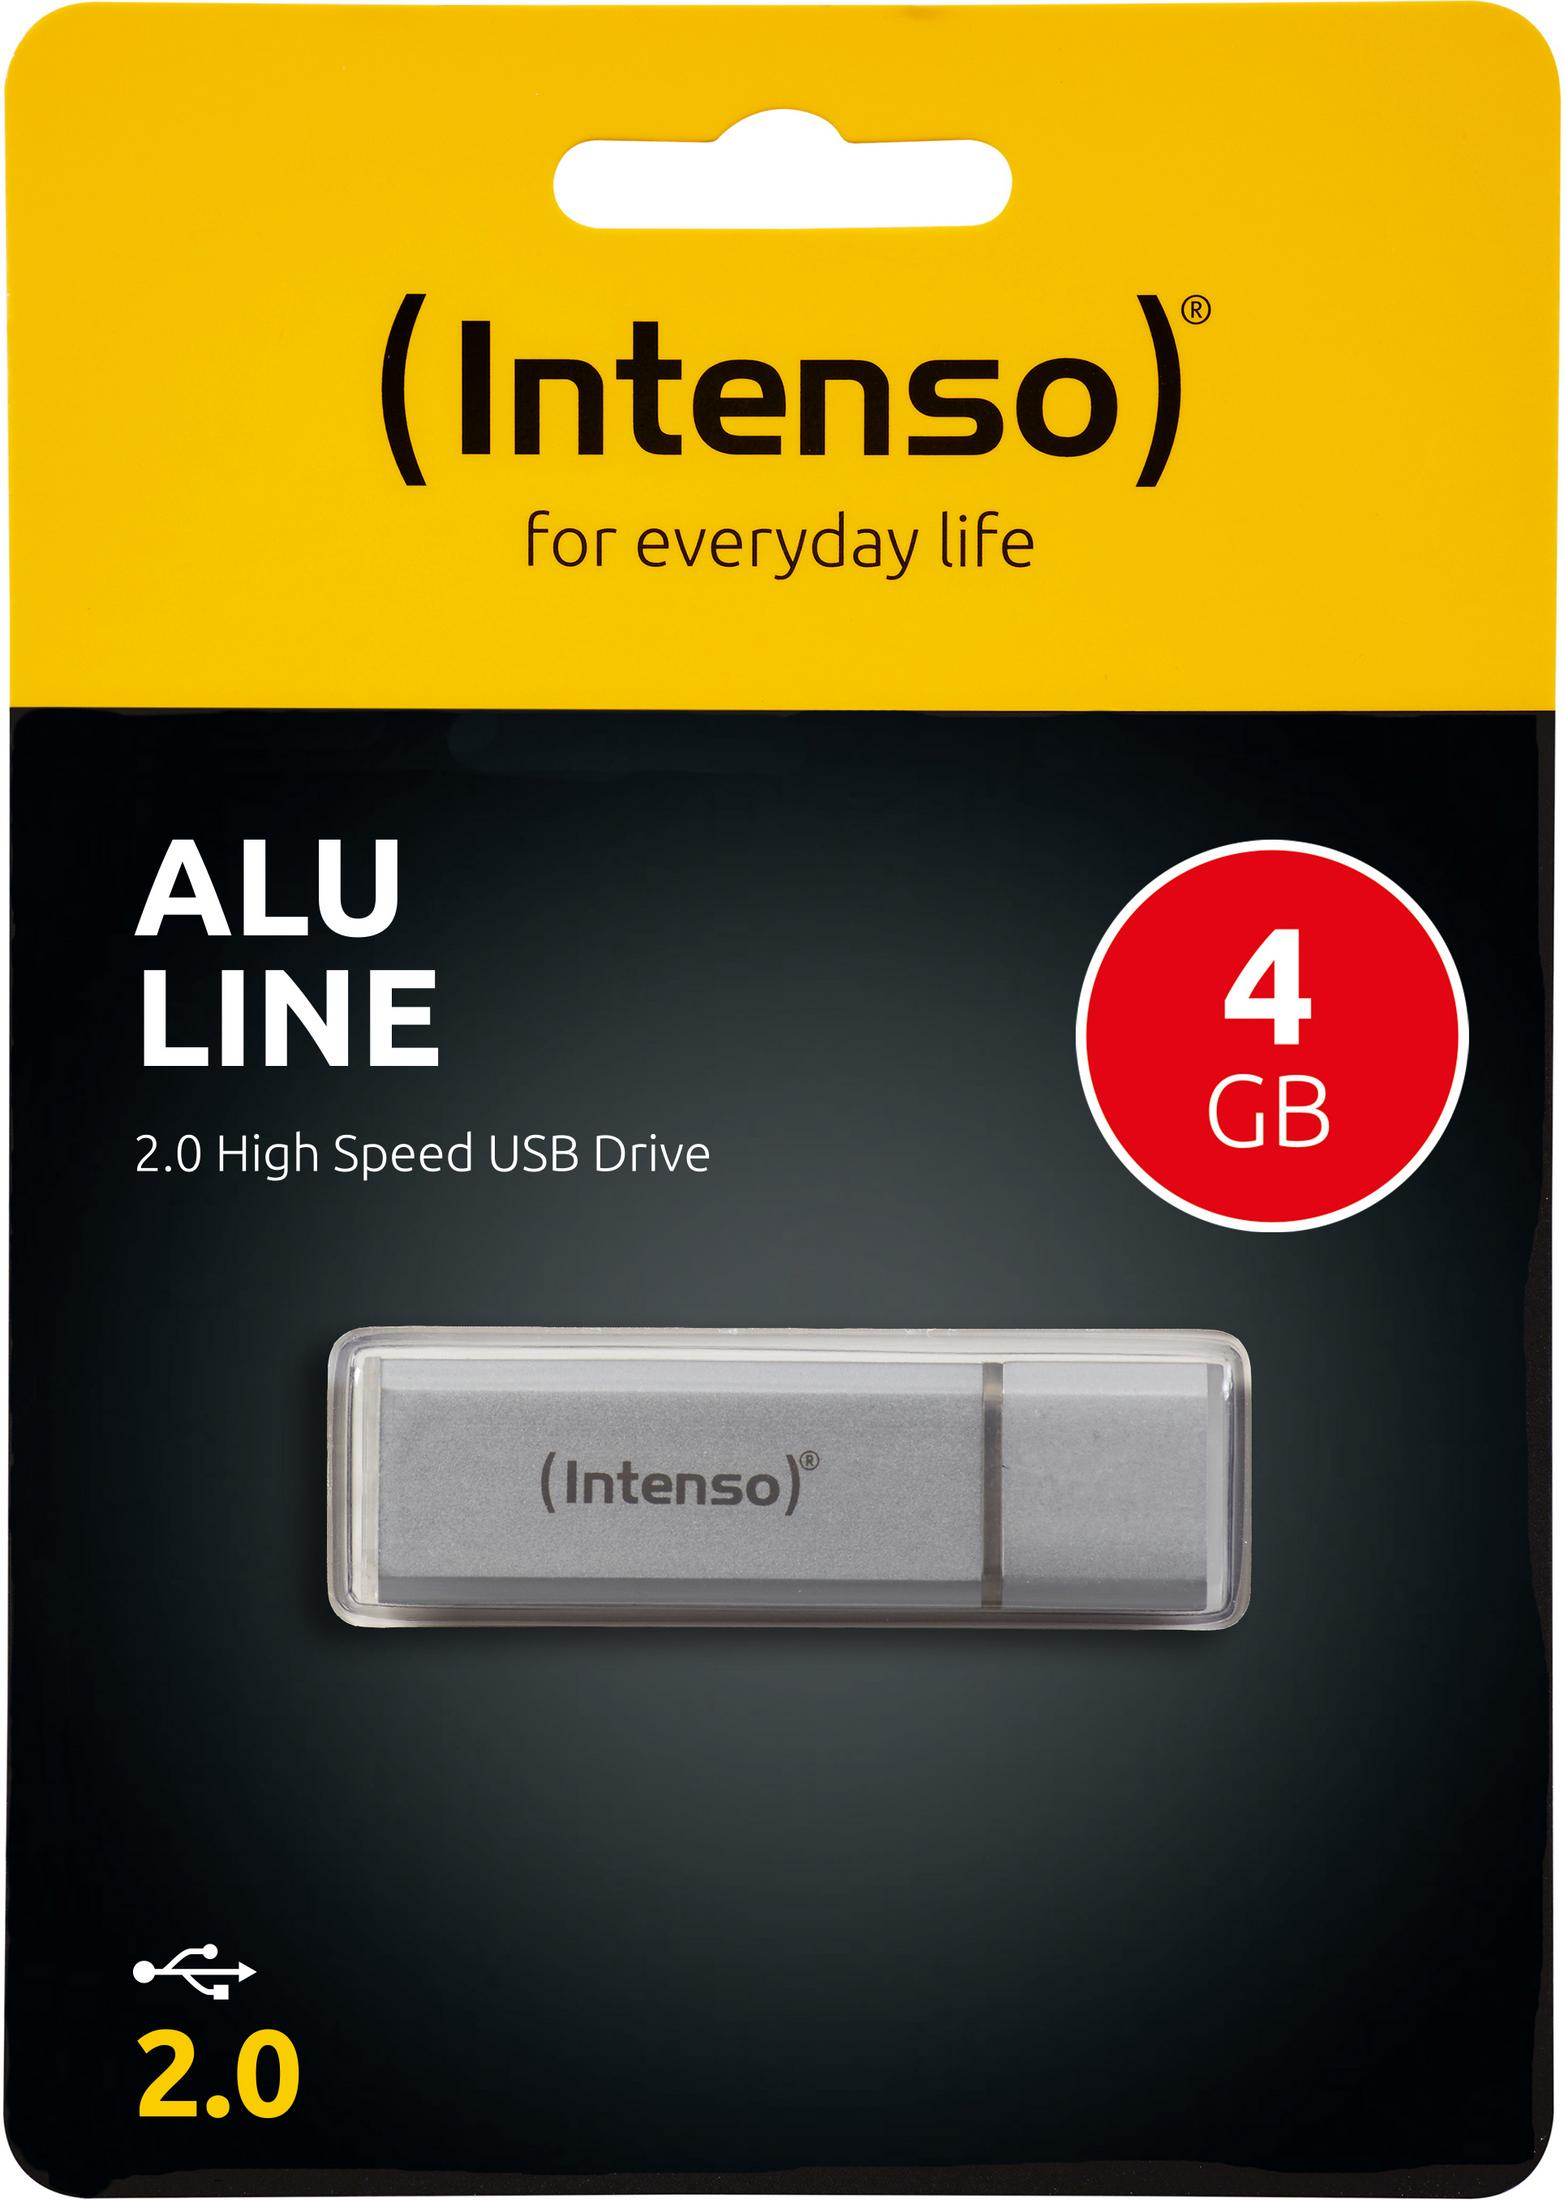 INTENSO 3521452 4GB 4 LINE (Silber, ALU INT USB-Stick GB) SILBER